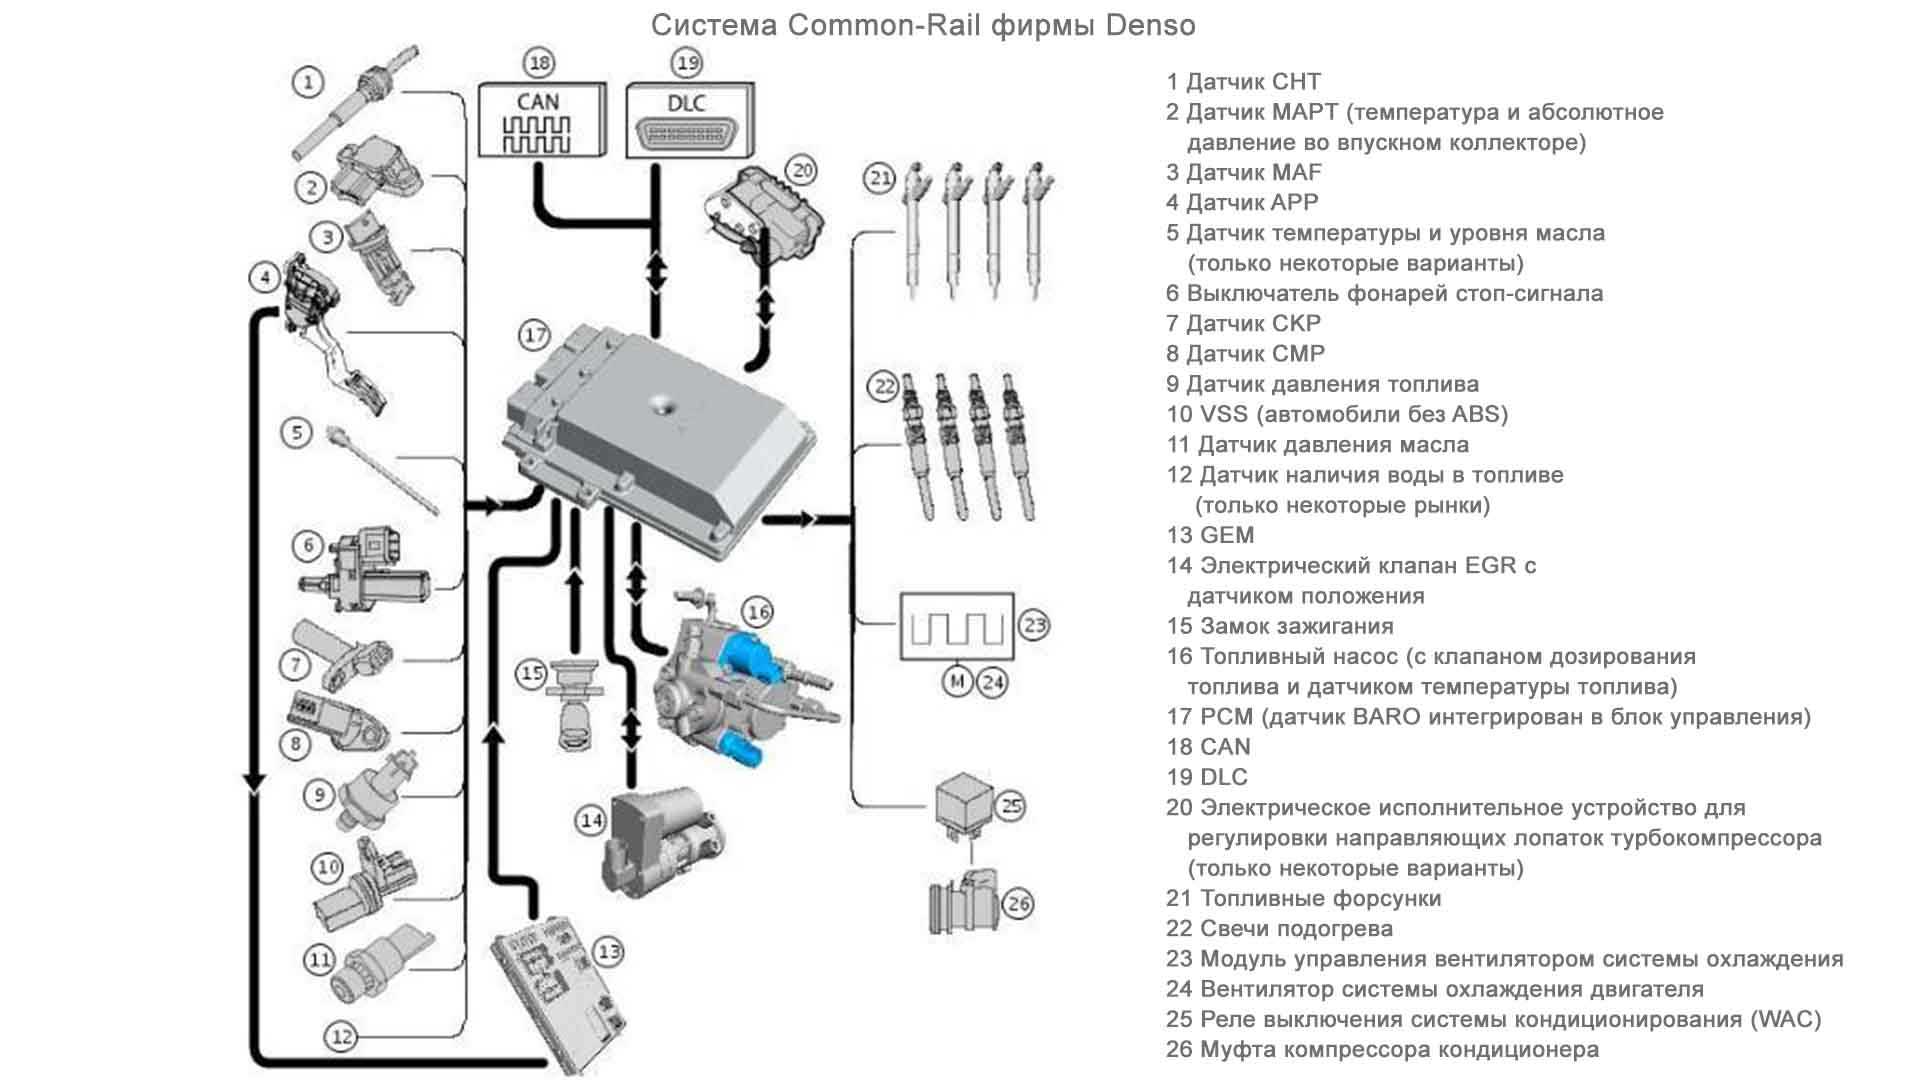 Самостоятельное восстановление форсунок дизеля (система common rail)